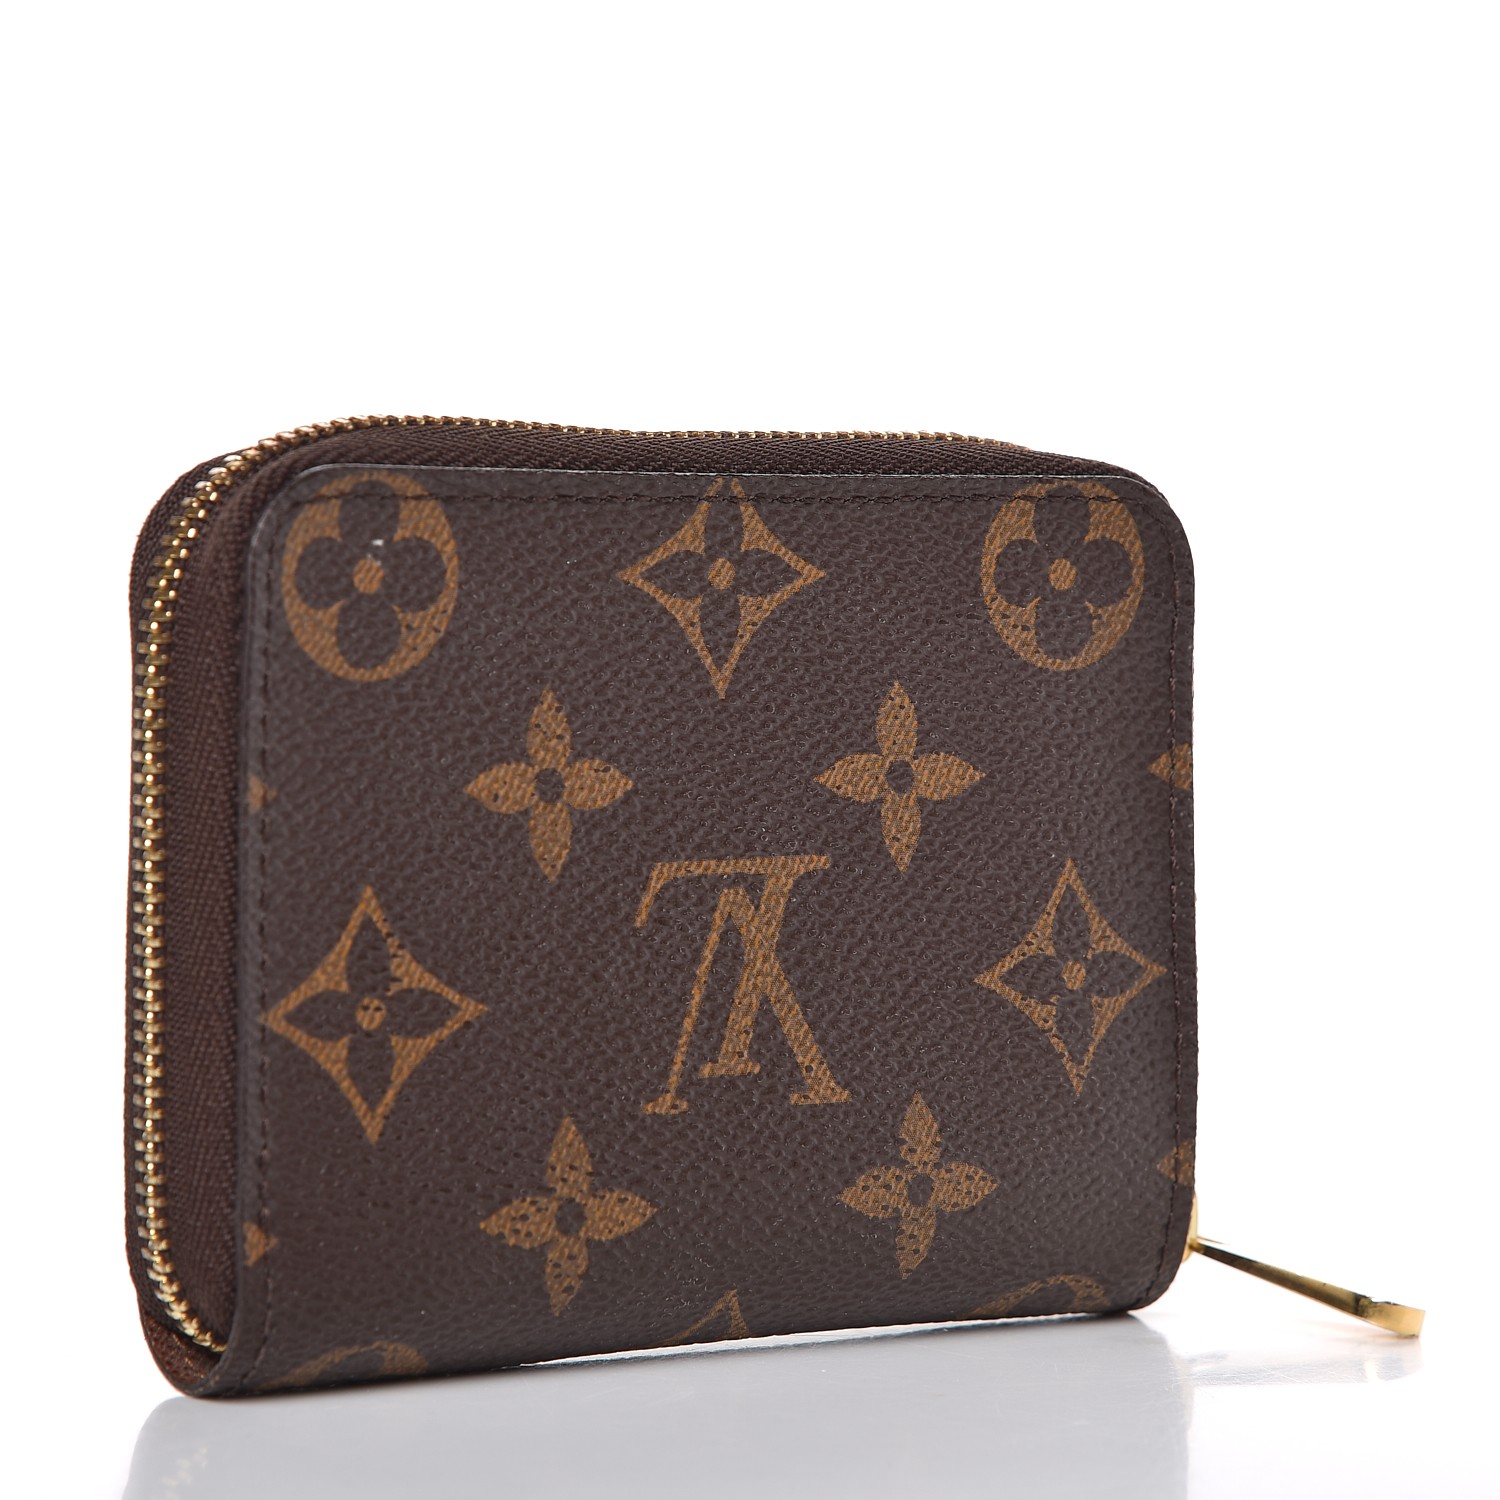 Authentic Women's Louis Vuitton Monogram Victorine Wallet w/ Box & Dustbag  EUC!!